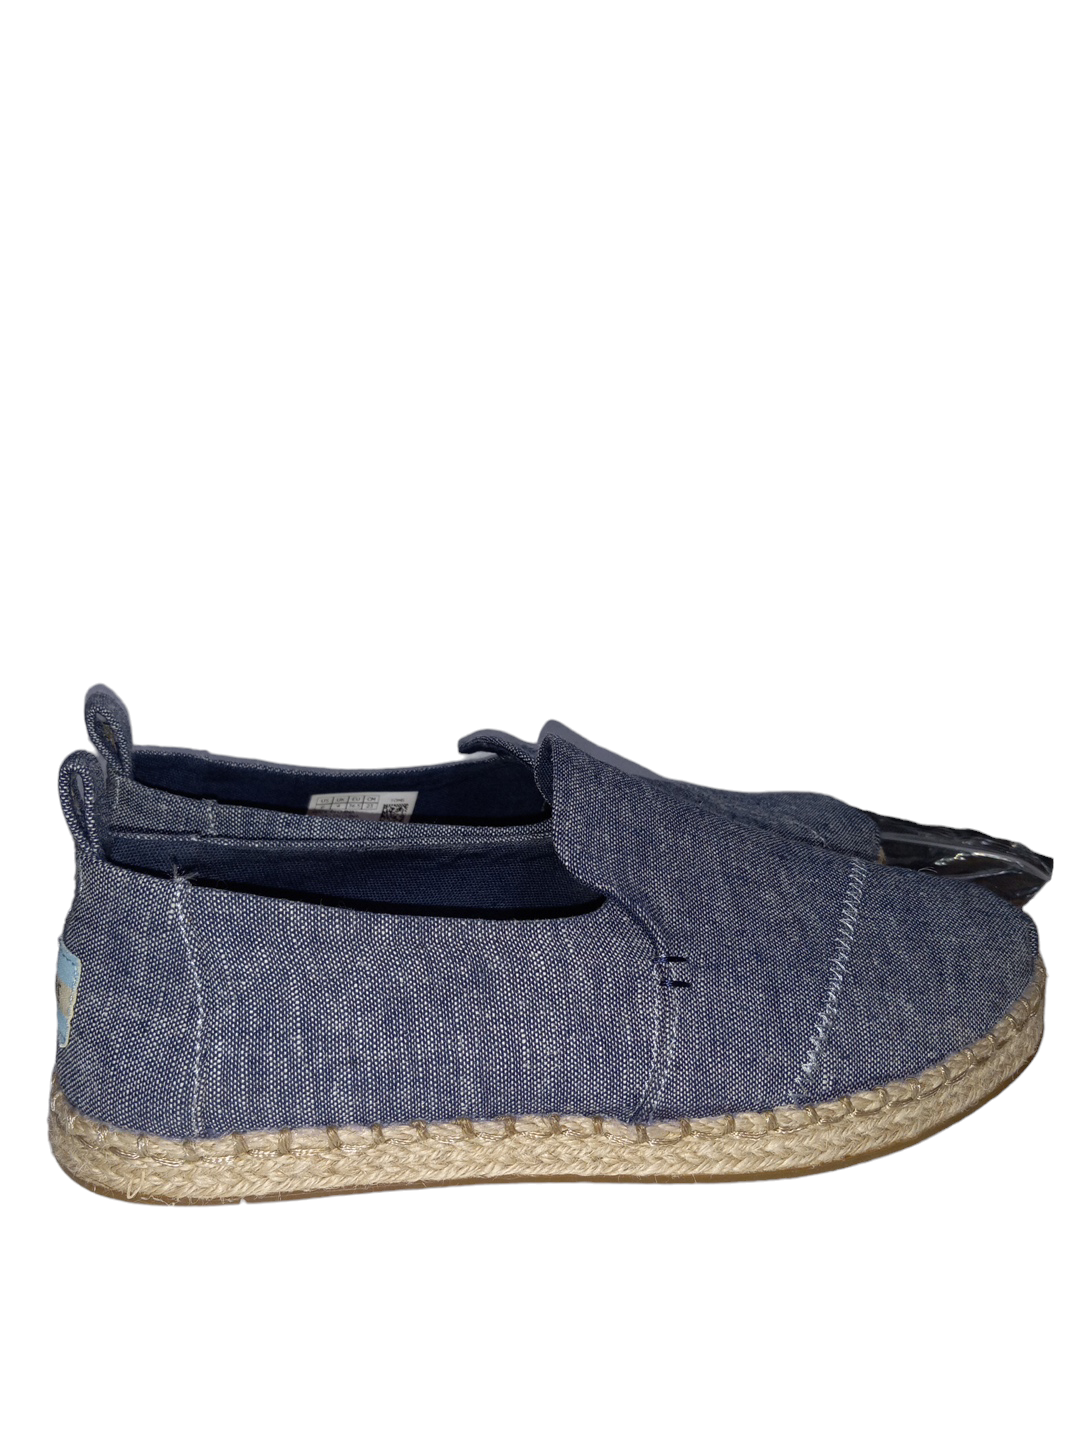 Blue Denim Shoes Flats Toms, Size 6